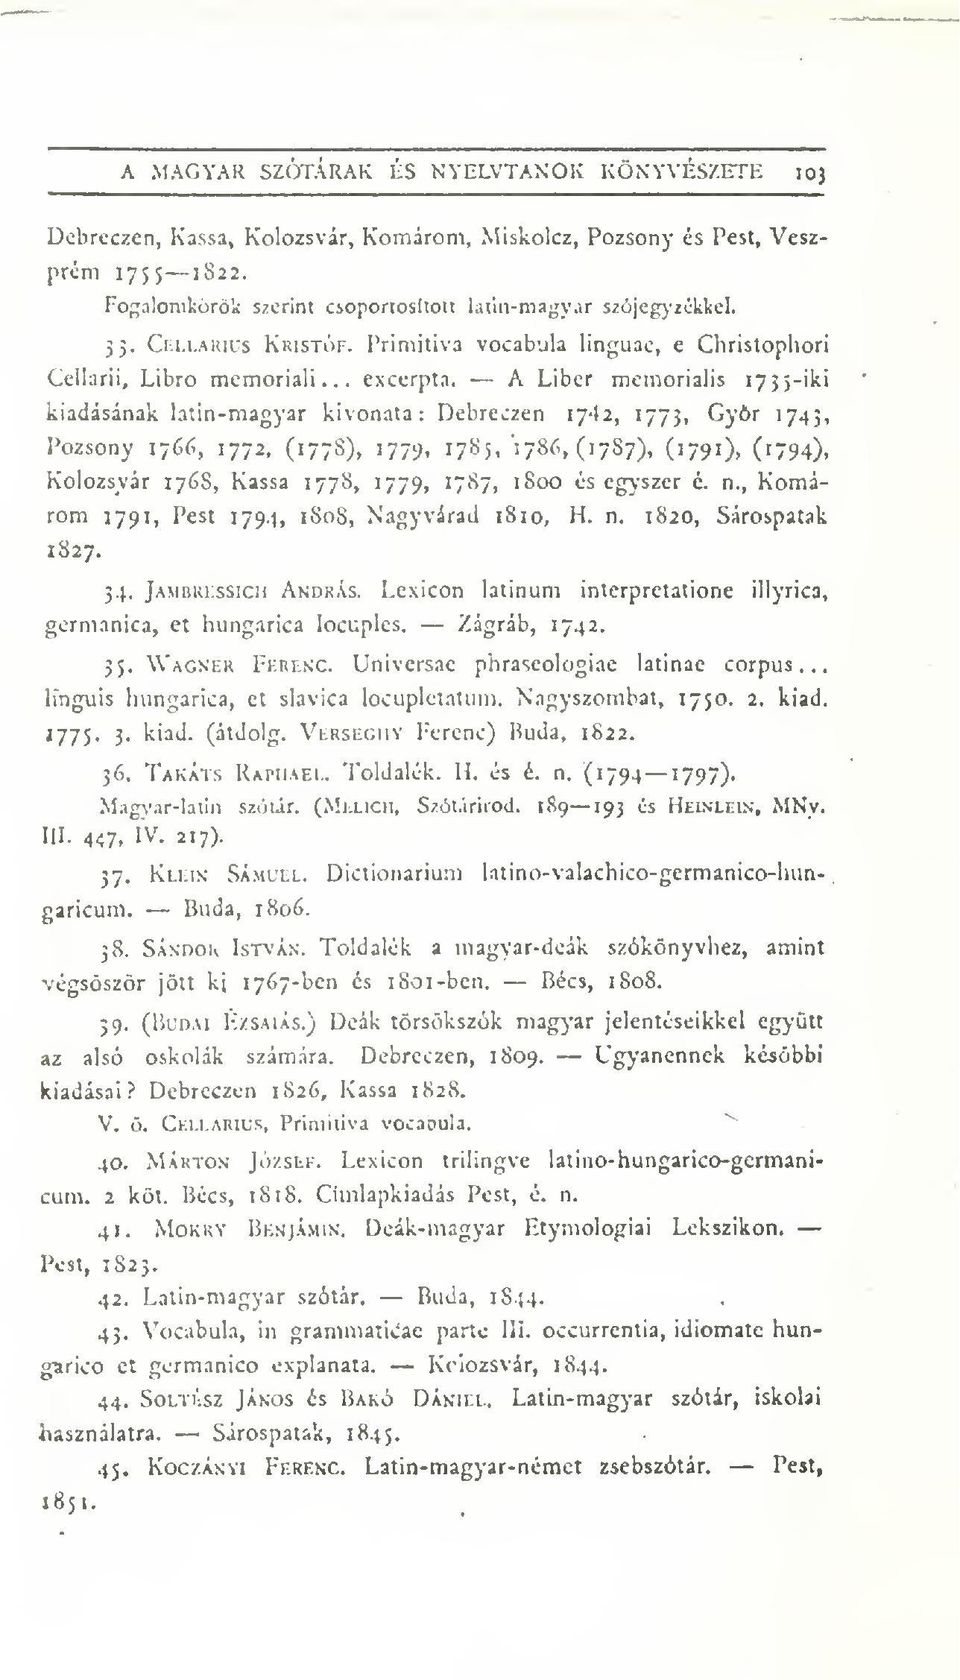 A Libcr memorialis lyjj-iki kiadásának latin-magyar kivonata: Debreczen 1742, 1773, Gyr 174;, Pozsony 1766, 1772, (177S), 177^, 1785, 1786, (1787), (1791), (i794), Kolozsvár 176S, Kassa 1778, 1779,